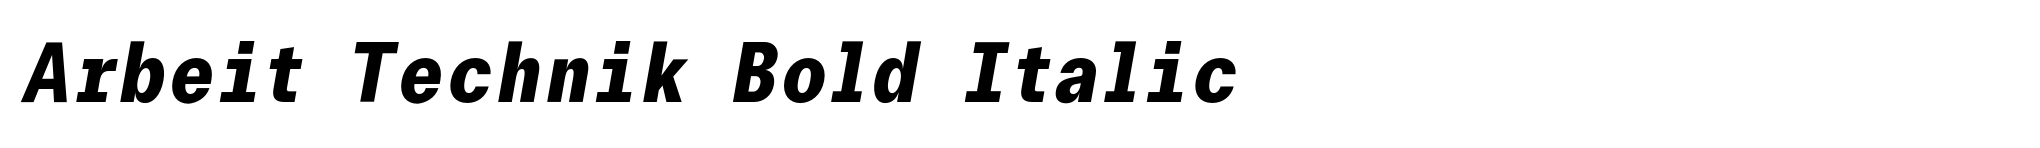 Arbeit Technik Bold Italic image